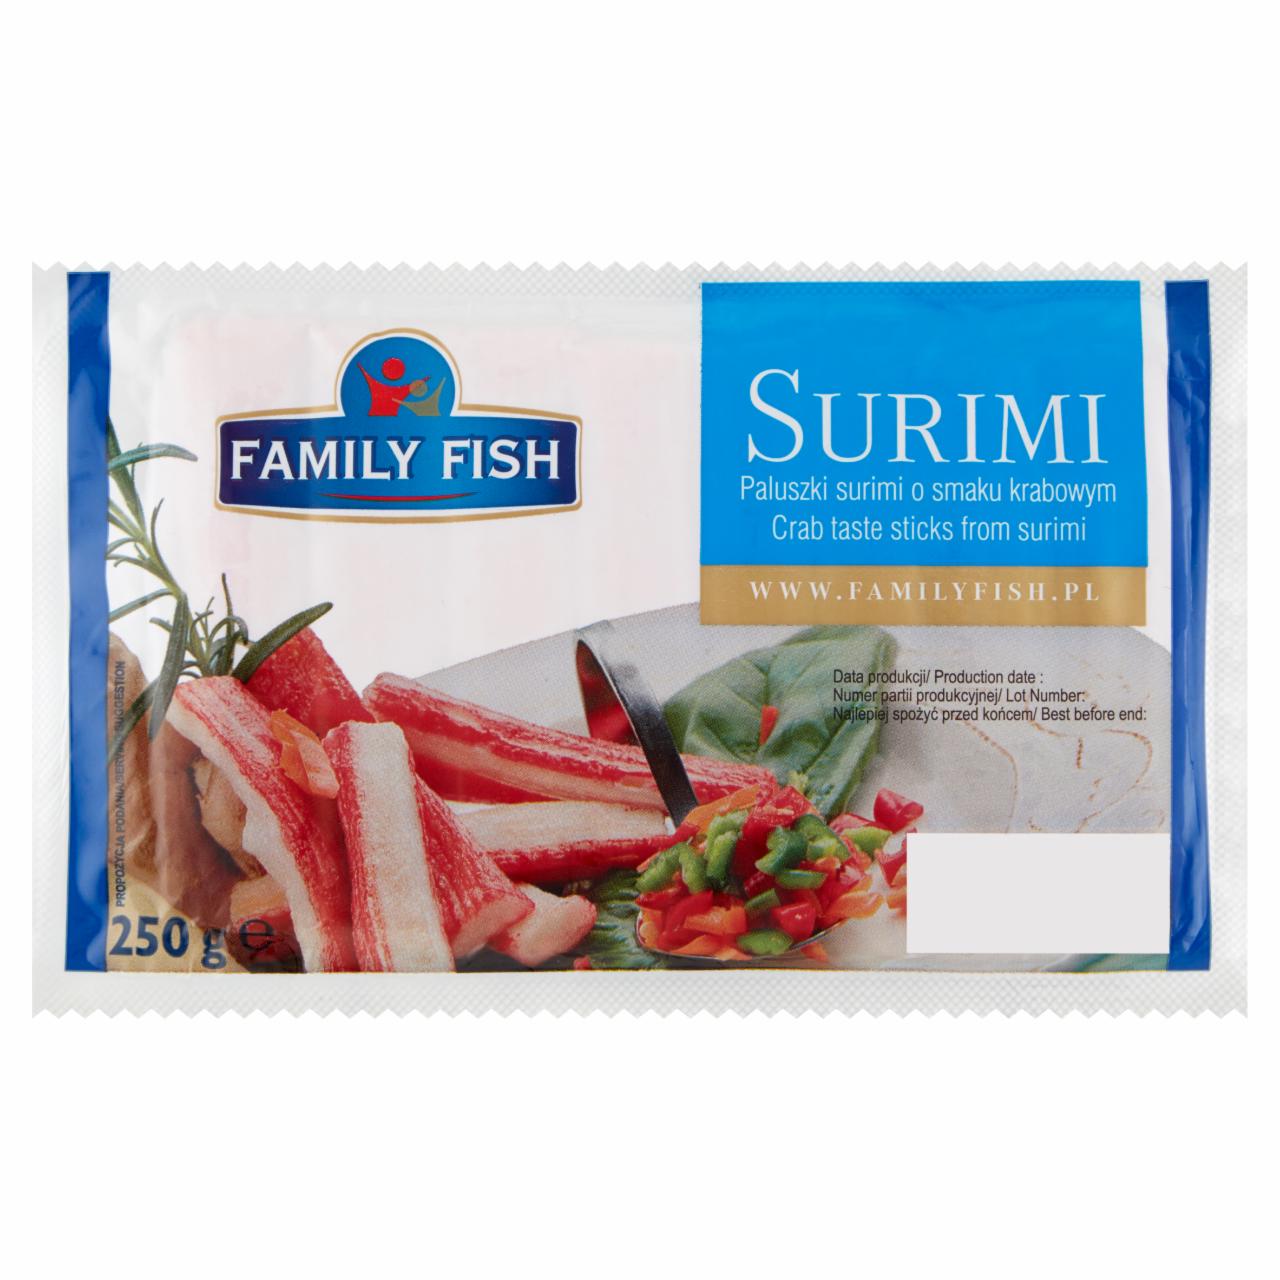 Zdjęcia - Family Fish Surimi Paluszki surimi o smaku krabowym 250 g